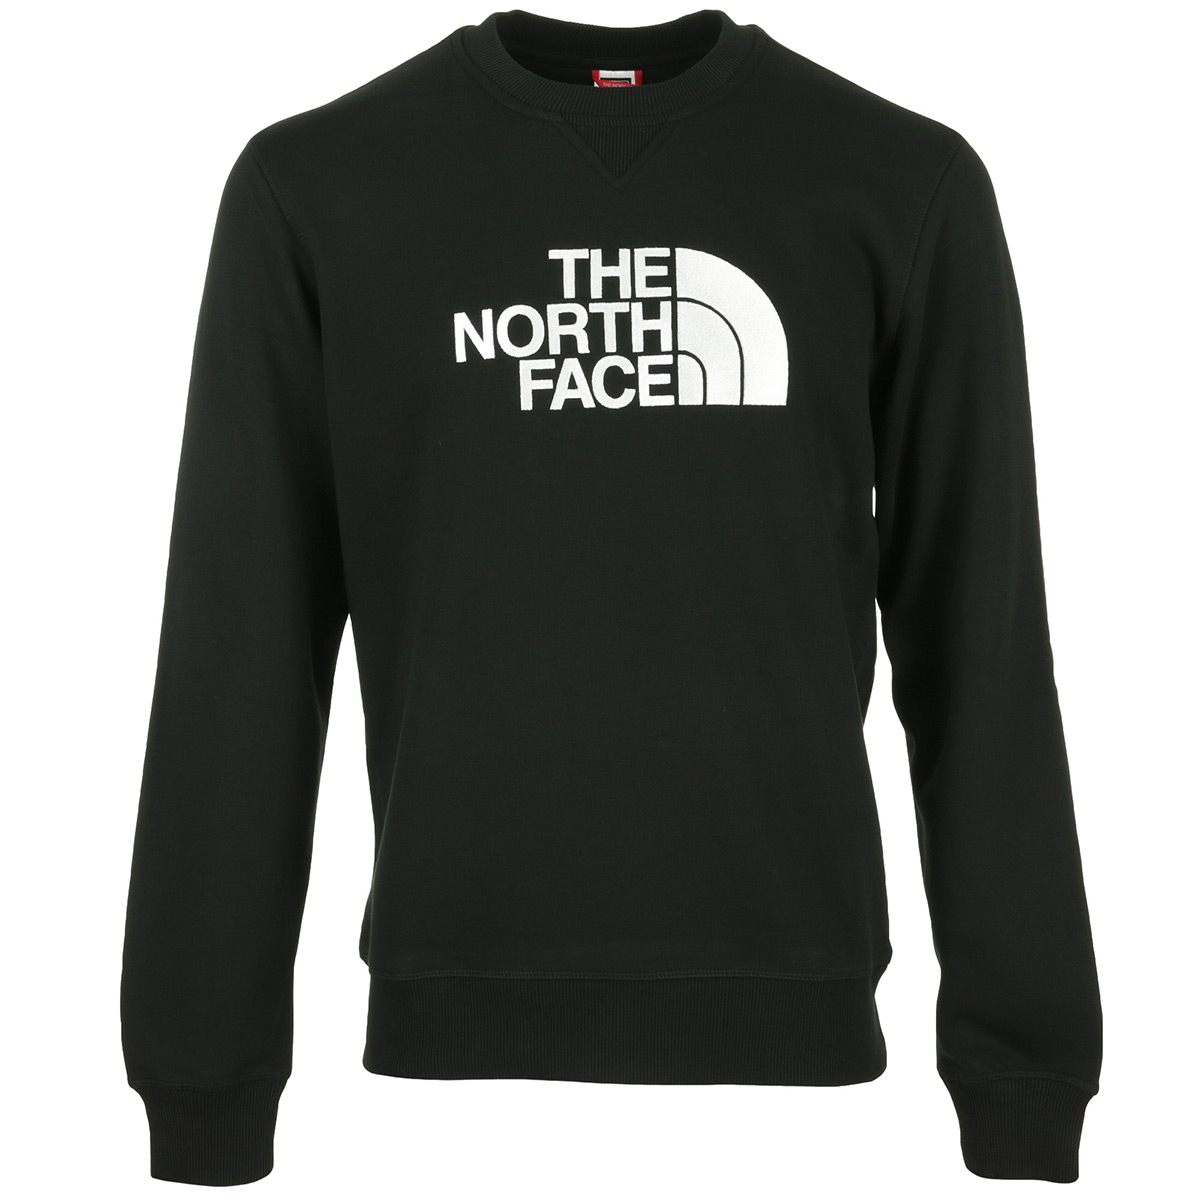 The North Face "Drew Peak Crew"